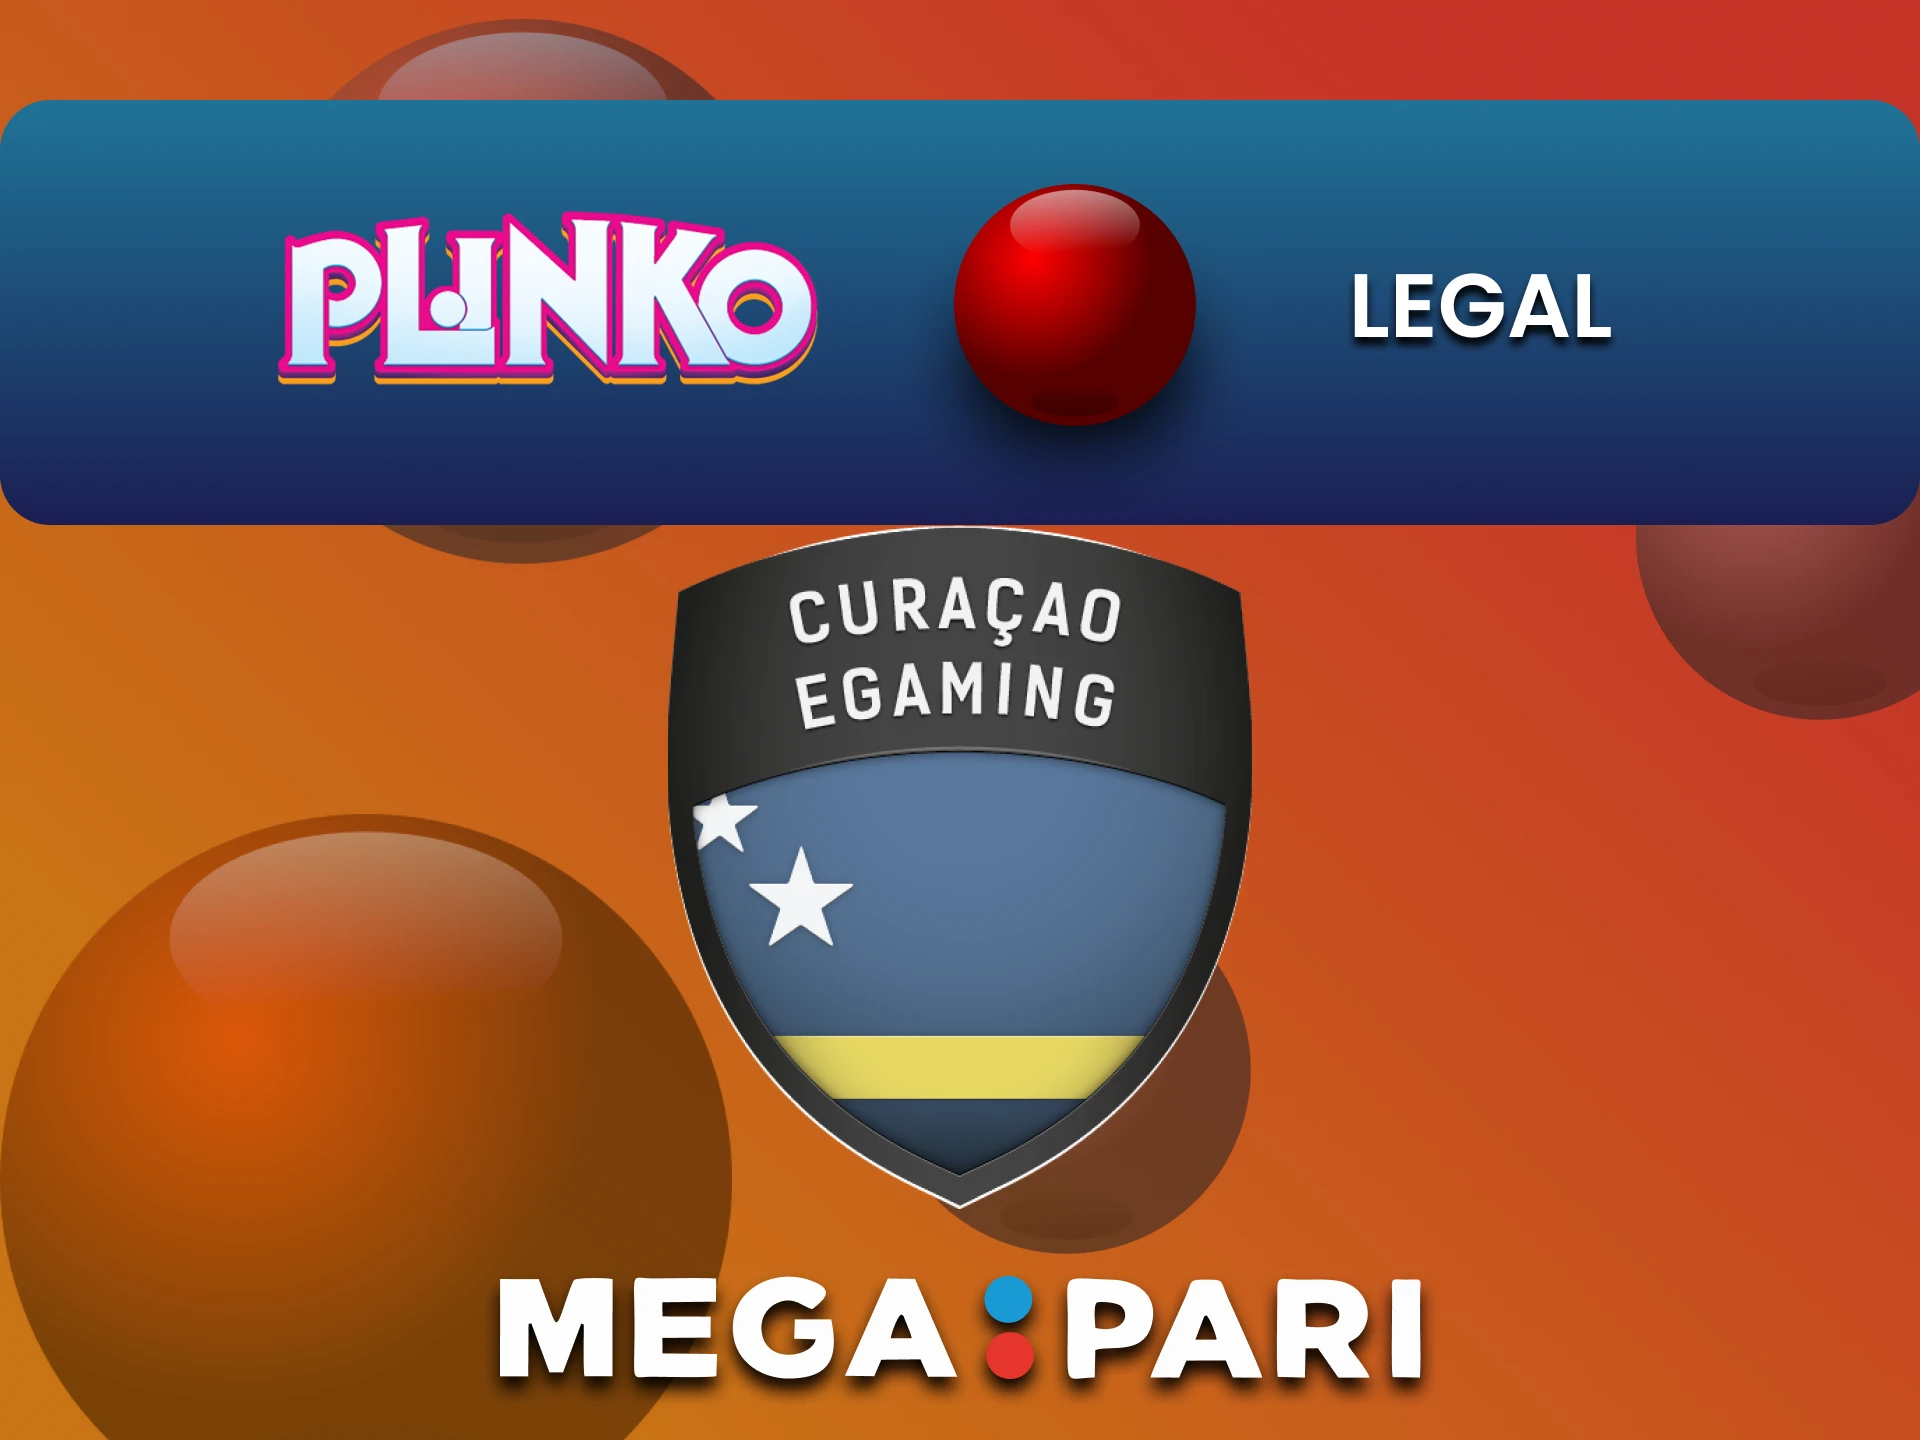 Megapari is legal to play at Plinko.